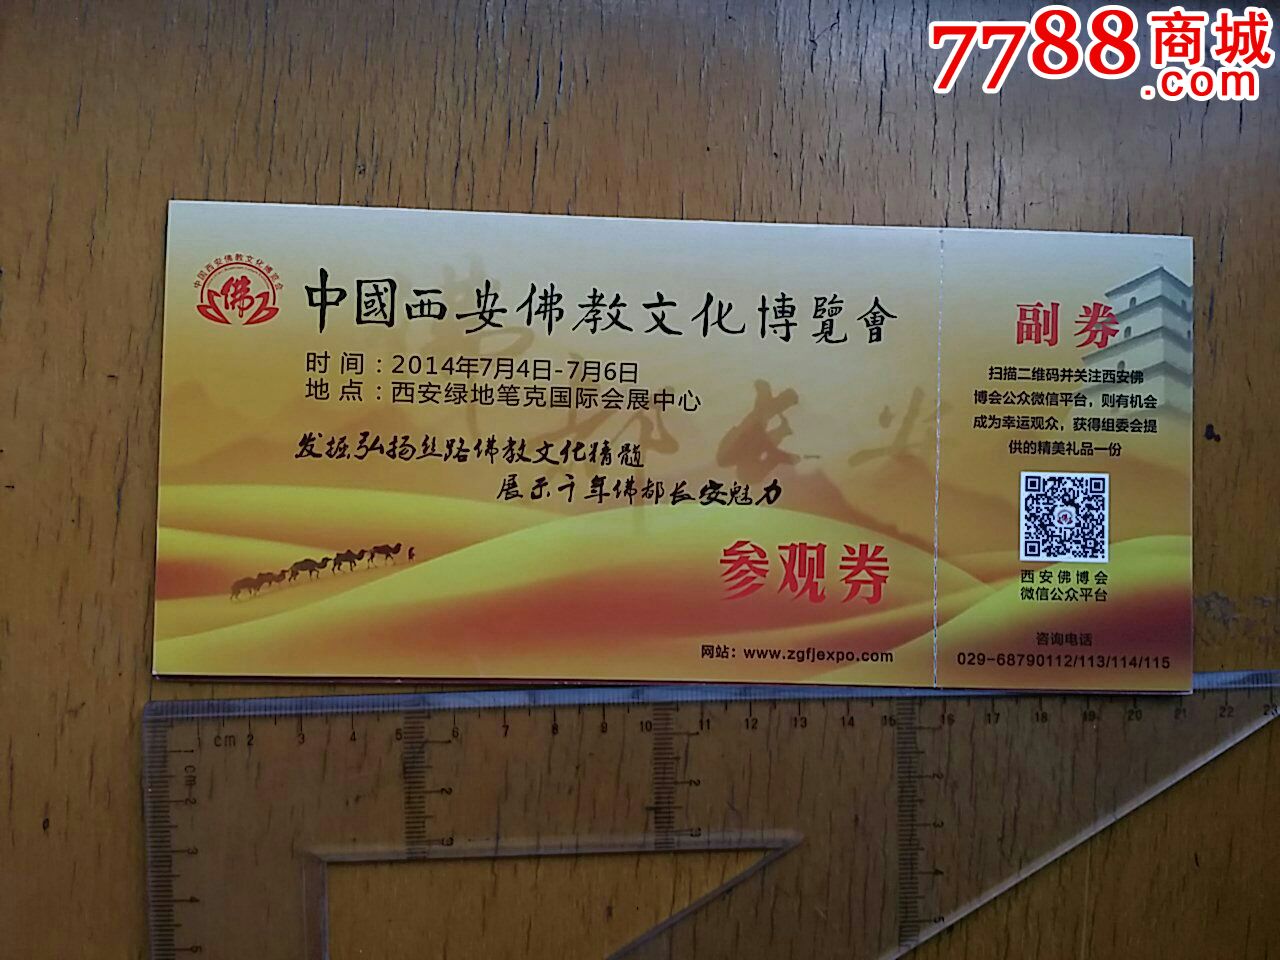 中国西安佛教文化展览会门票-价格:2元-se250